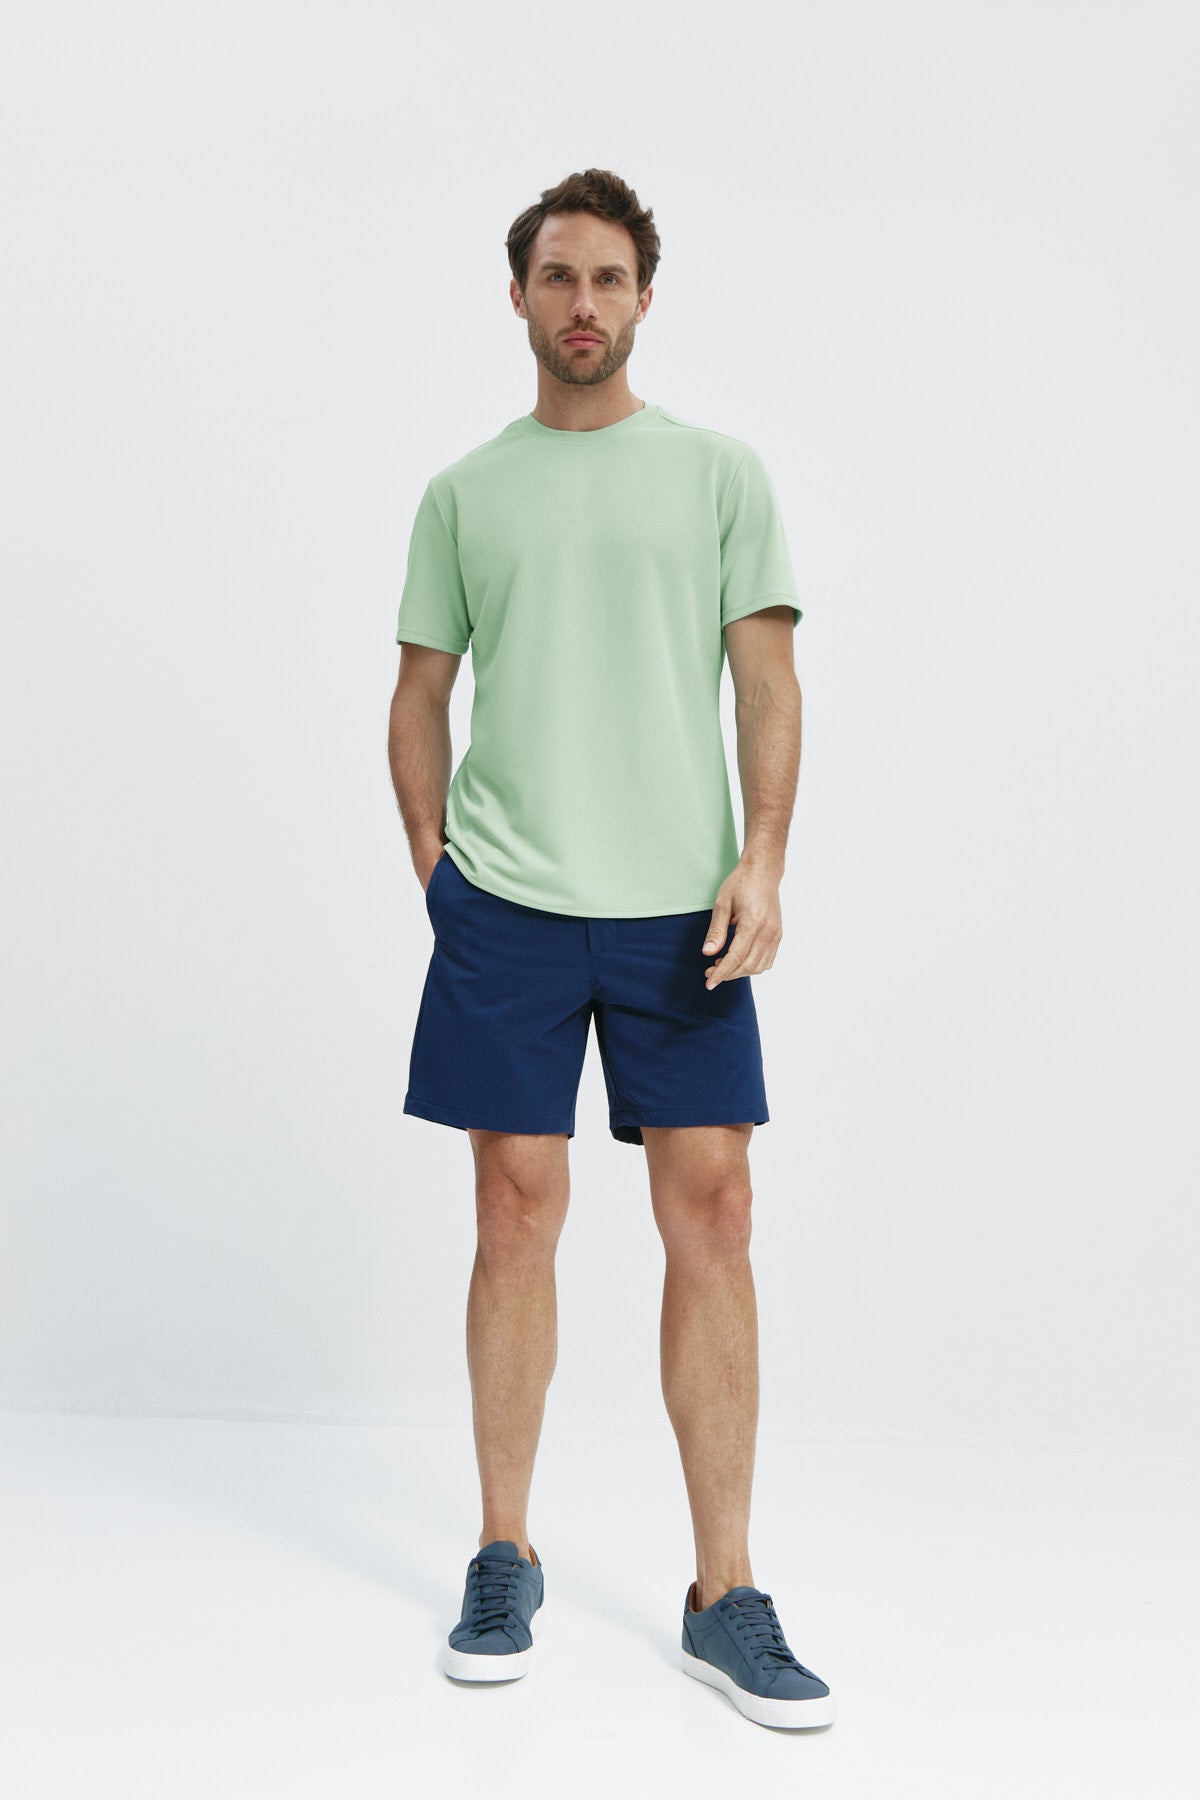 Camiseta ICE para hombre en verde freeze de Sepiia, fresca y resistente a arrugas y manchas. Foto cuerpo entero.